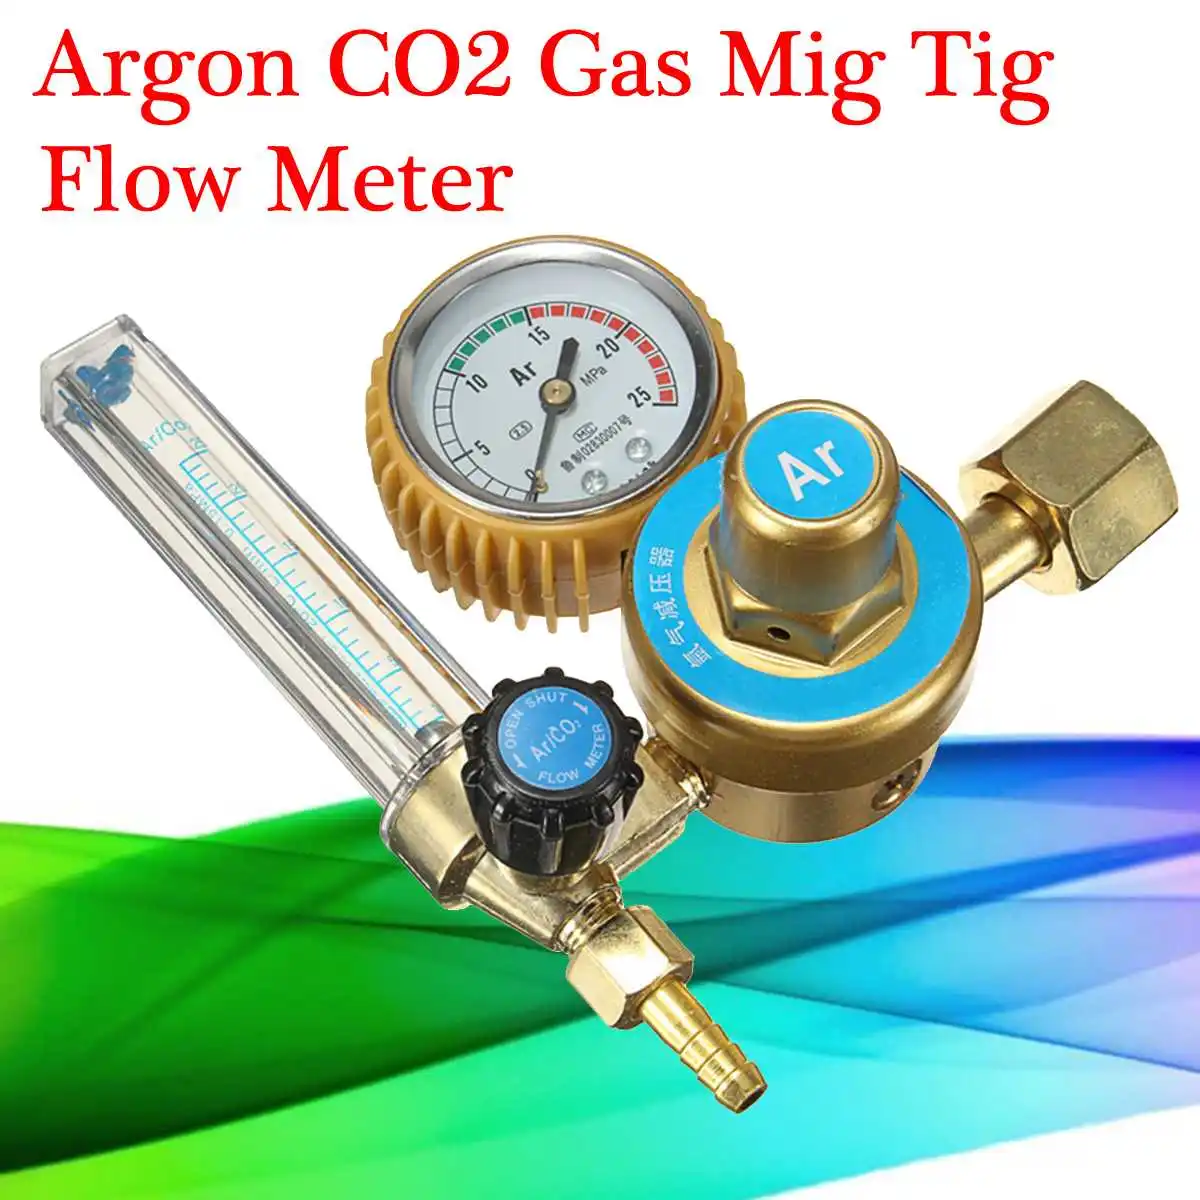 Металл и резина аргон CO2 газ Mig Tig счетчик регулятор потока сварочный манометр предохранительный клапан долговечное качество